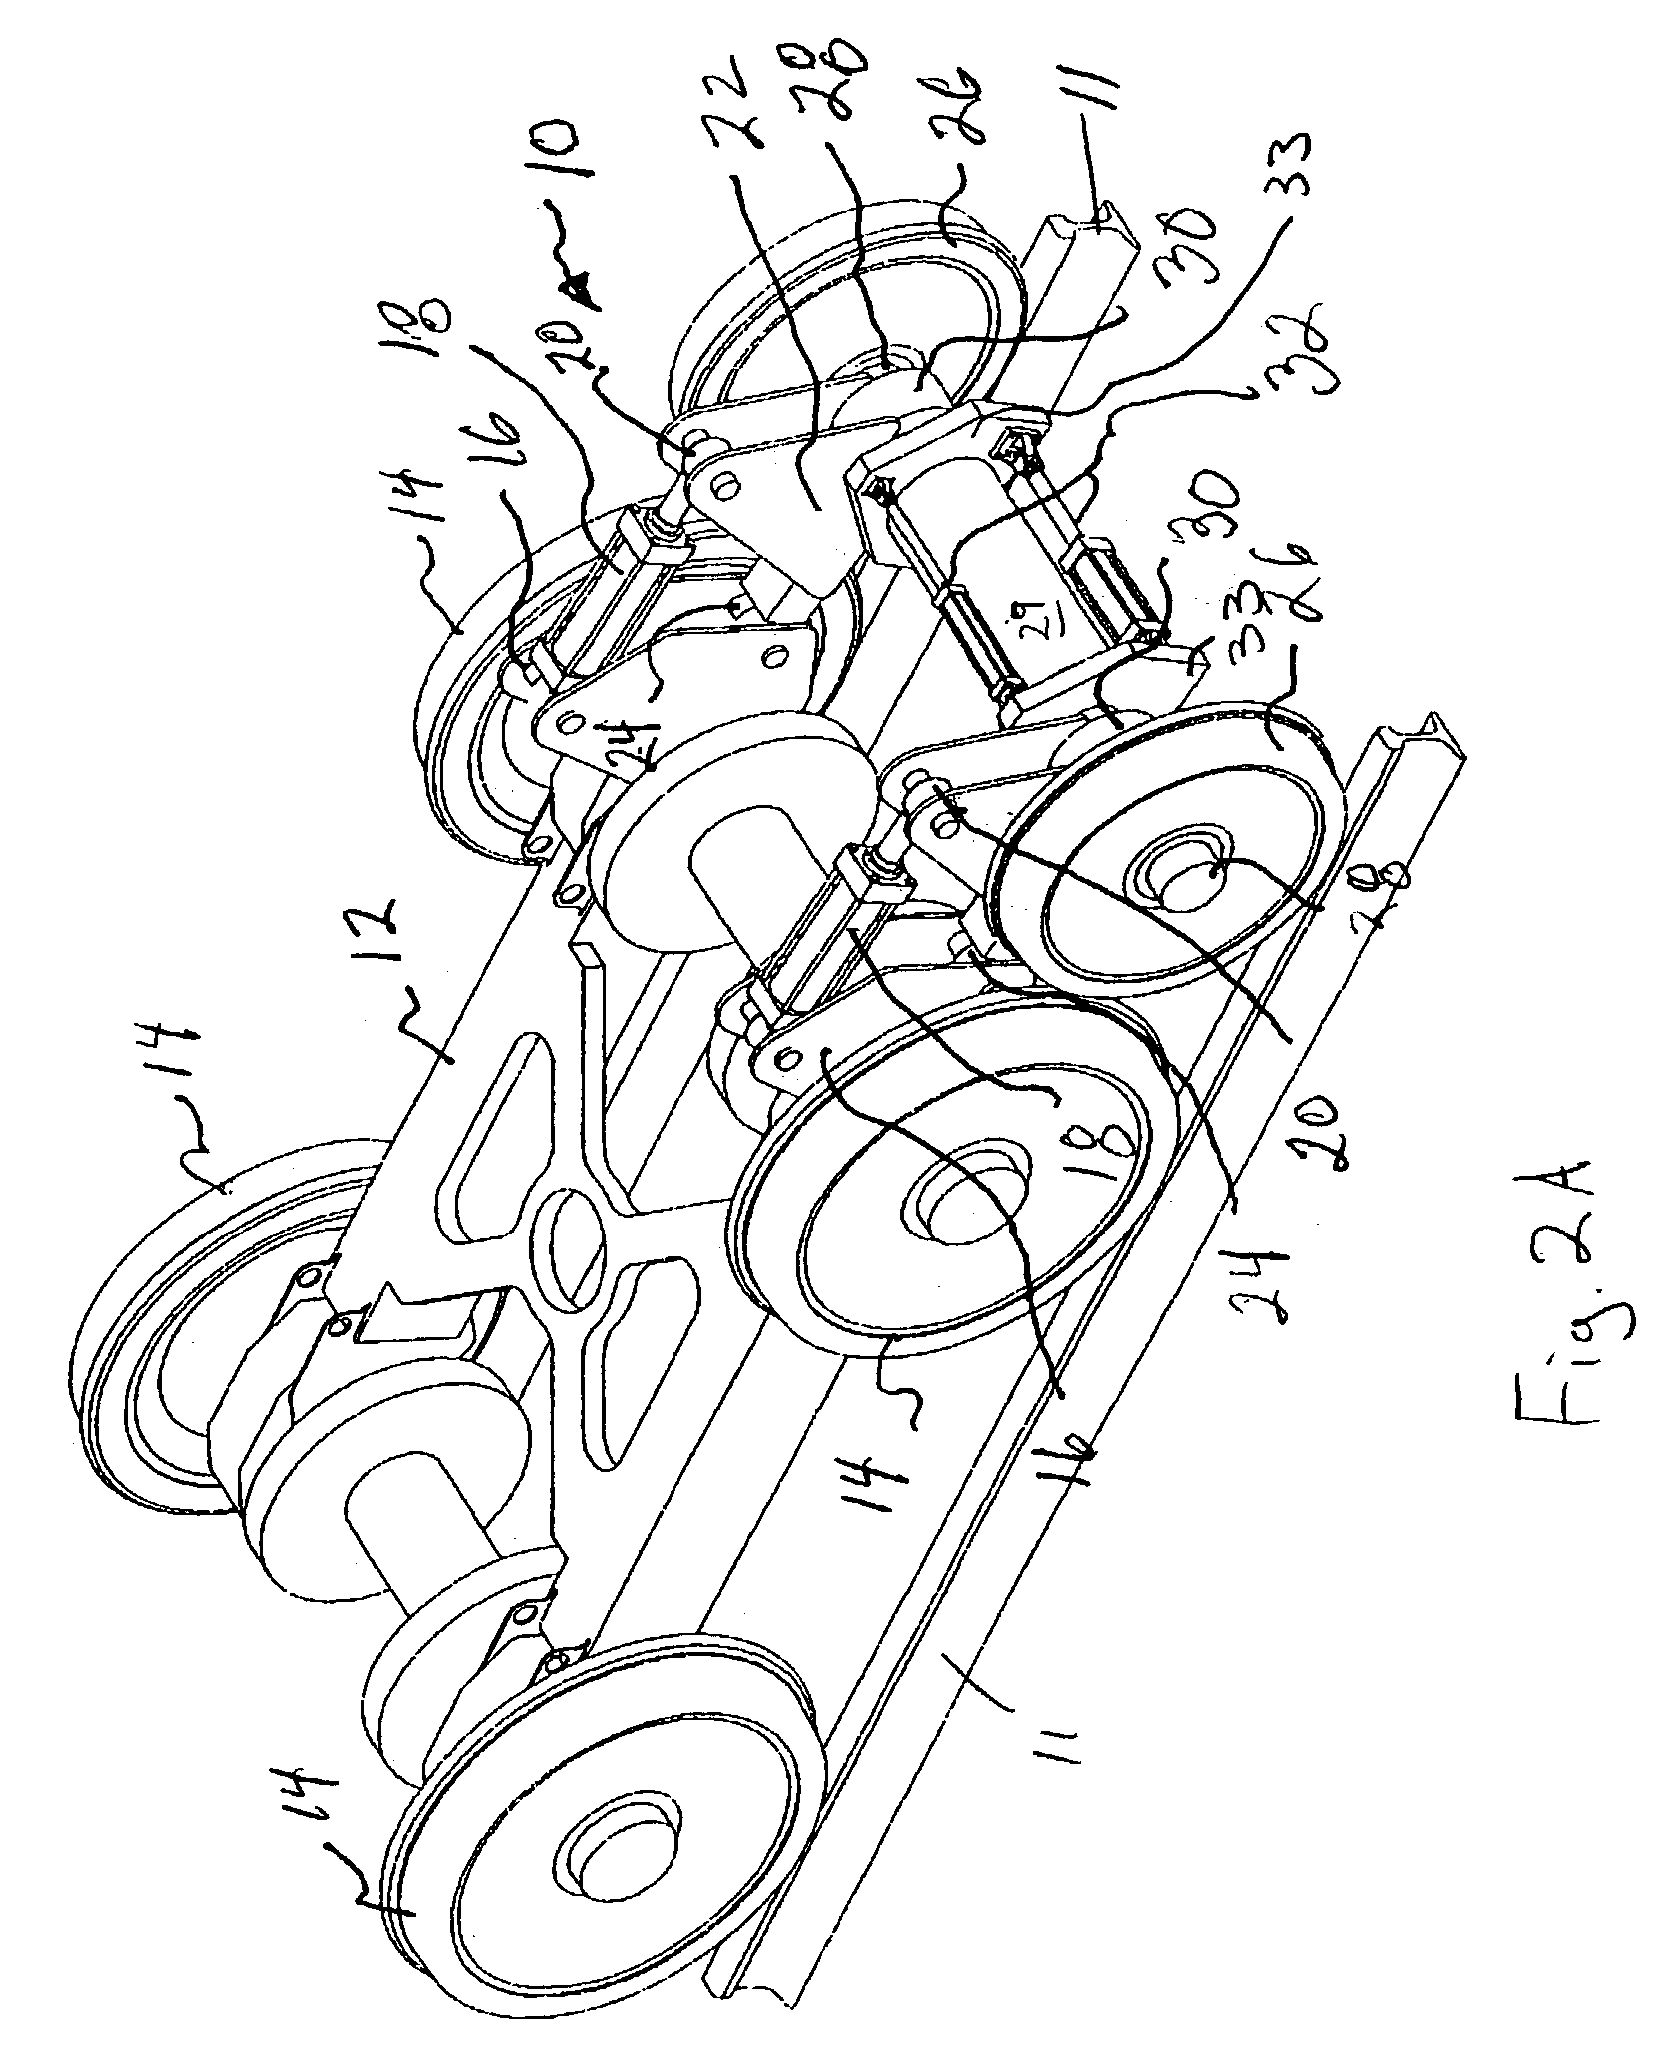 Inner bearing split axle assembly